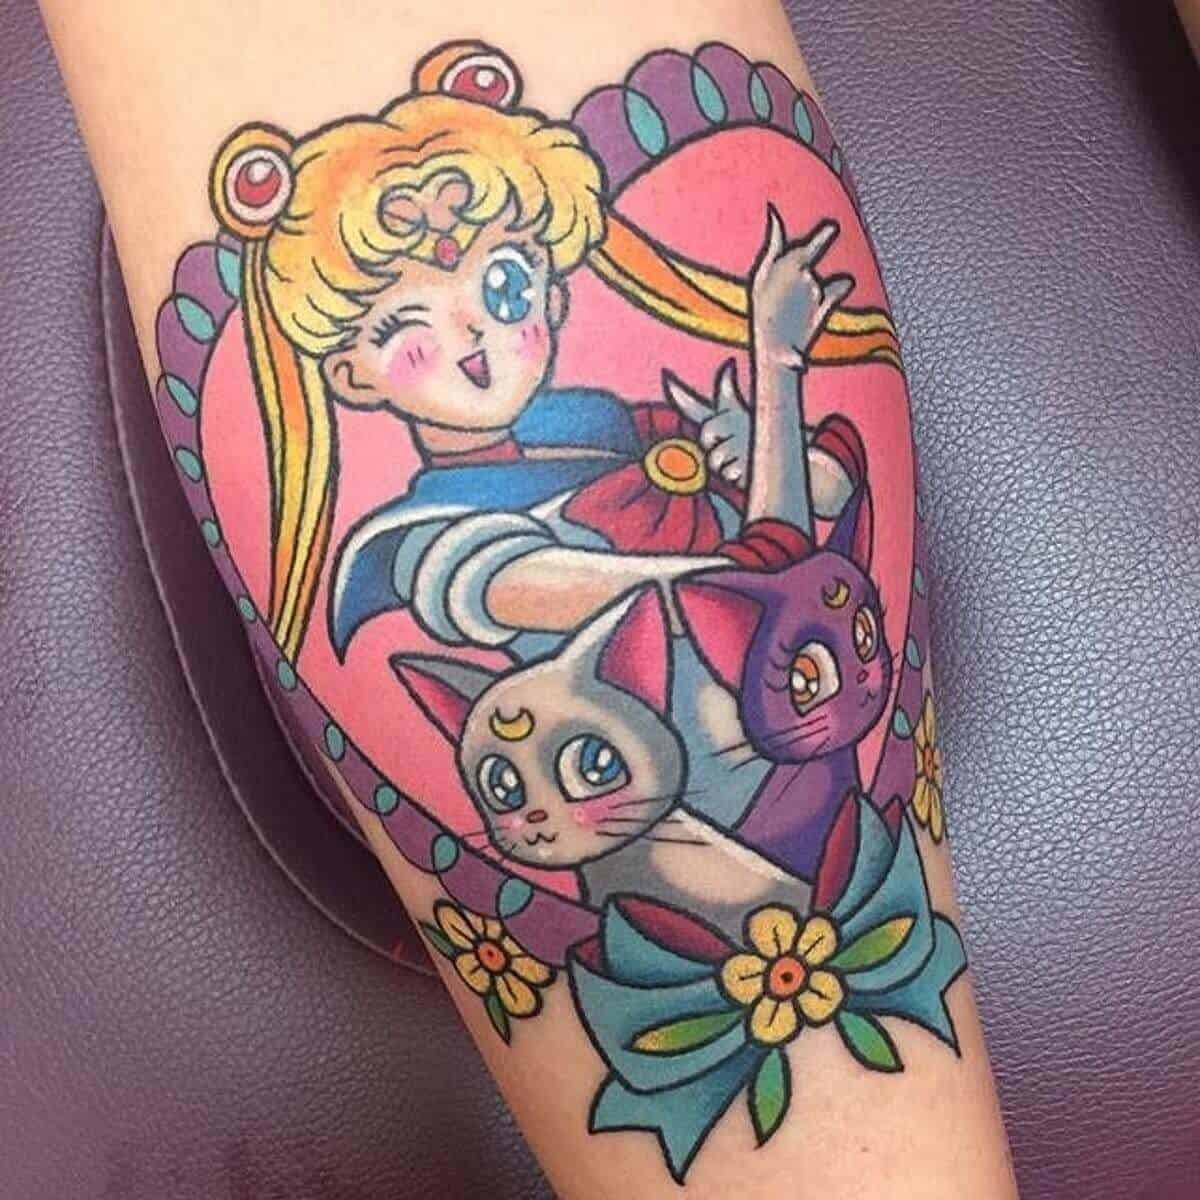 sailor moon tattoo on arm